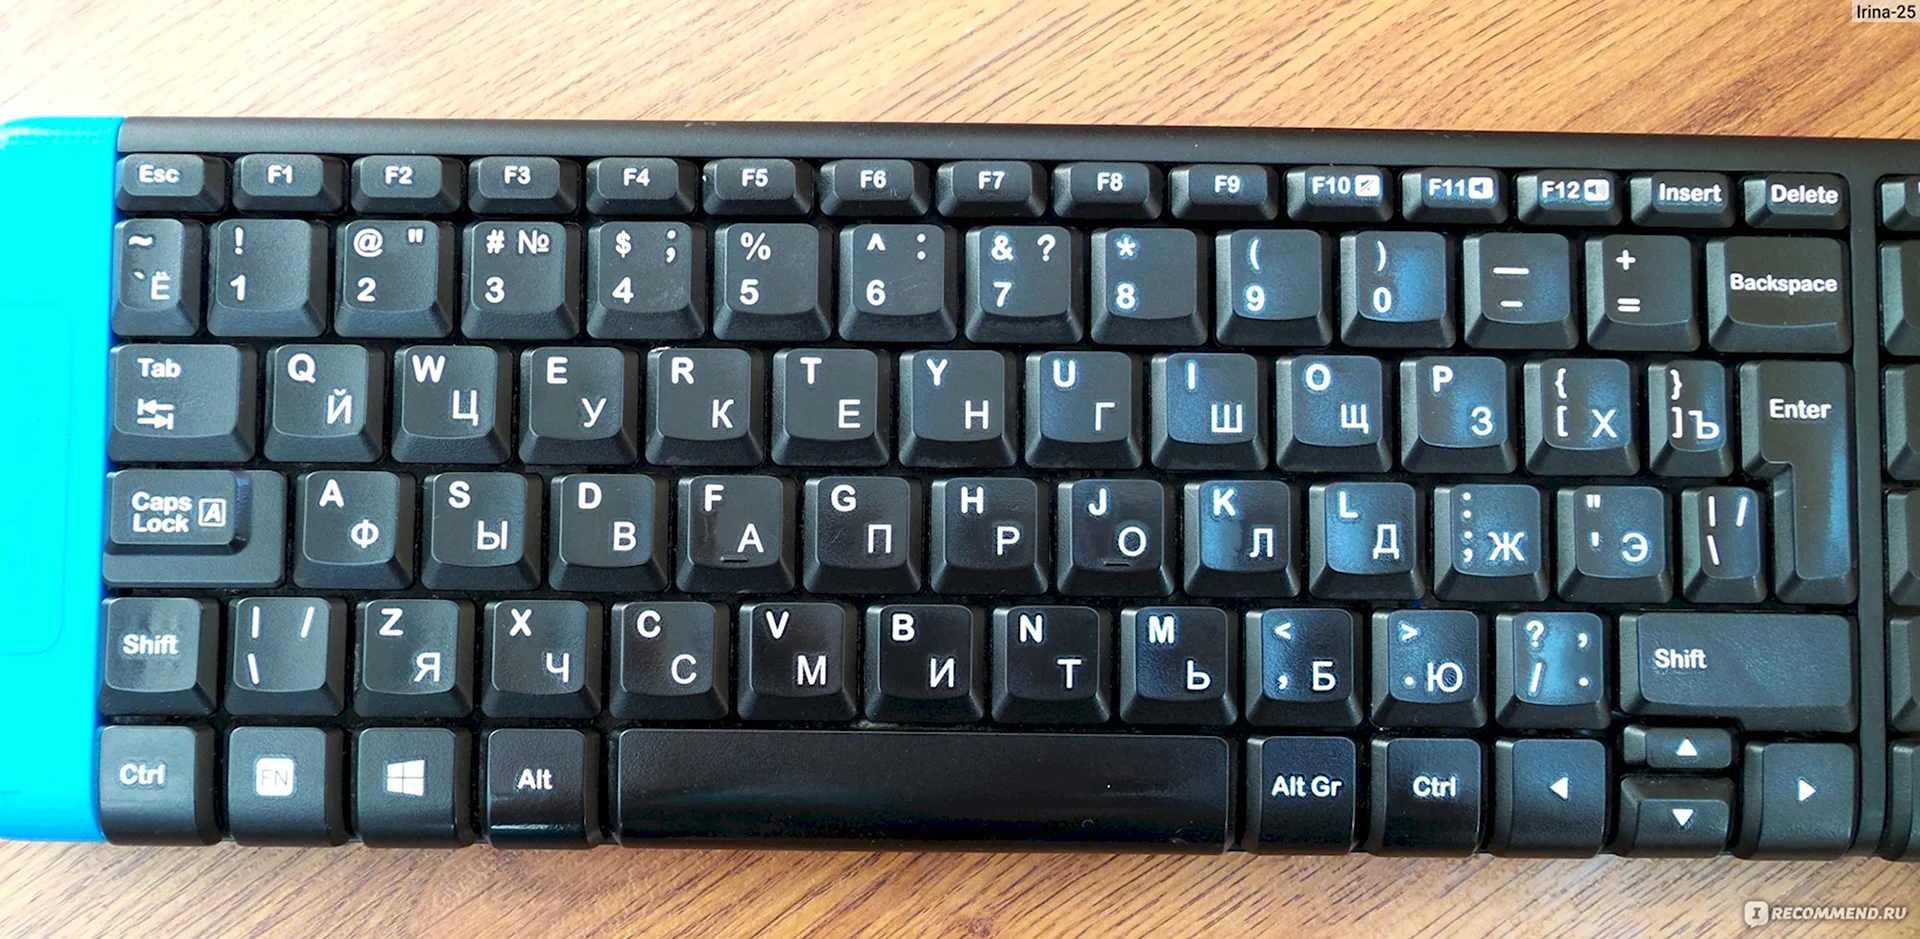 Русская клавиатура